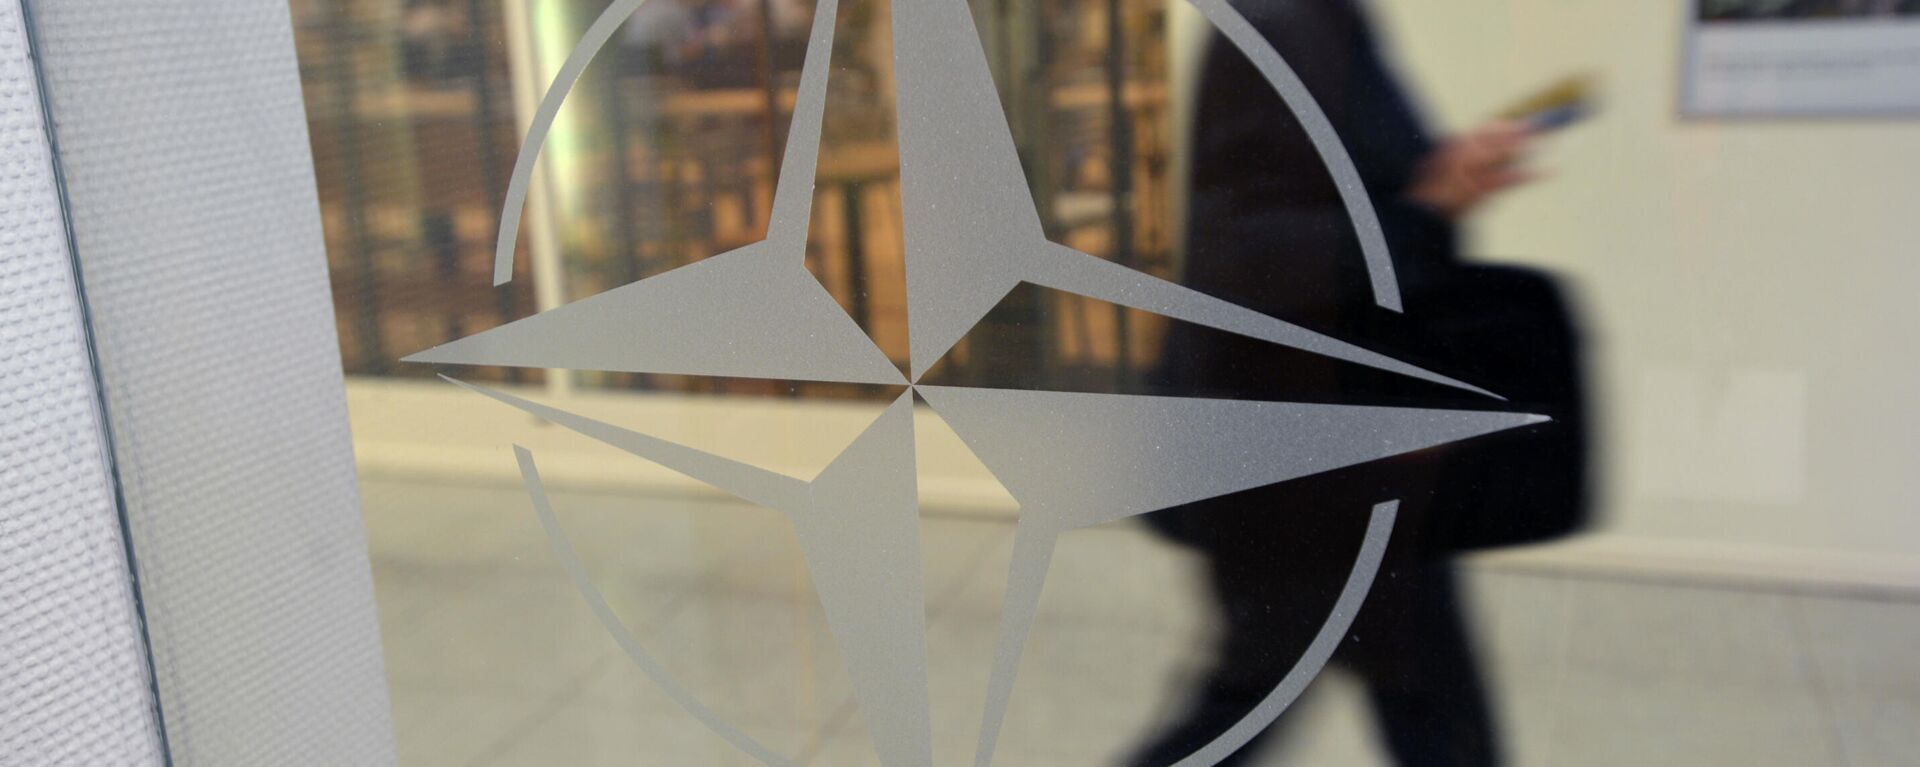 Эмблема организации в штаб-квартире НАТО в Брюсселе. - Sputnik Абхазия, 1920, 17.12.2021